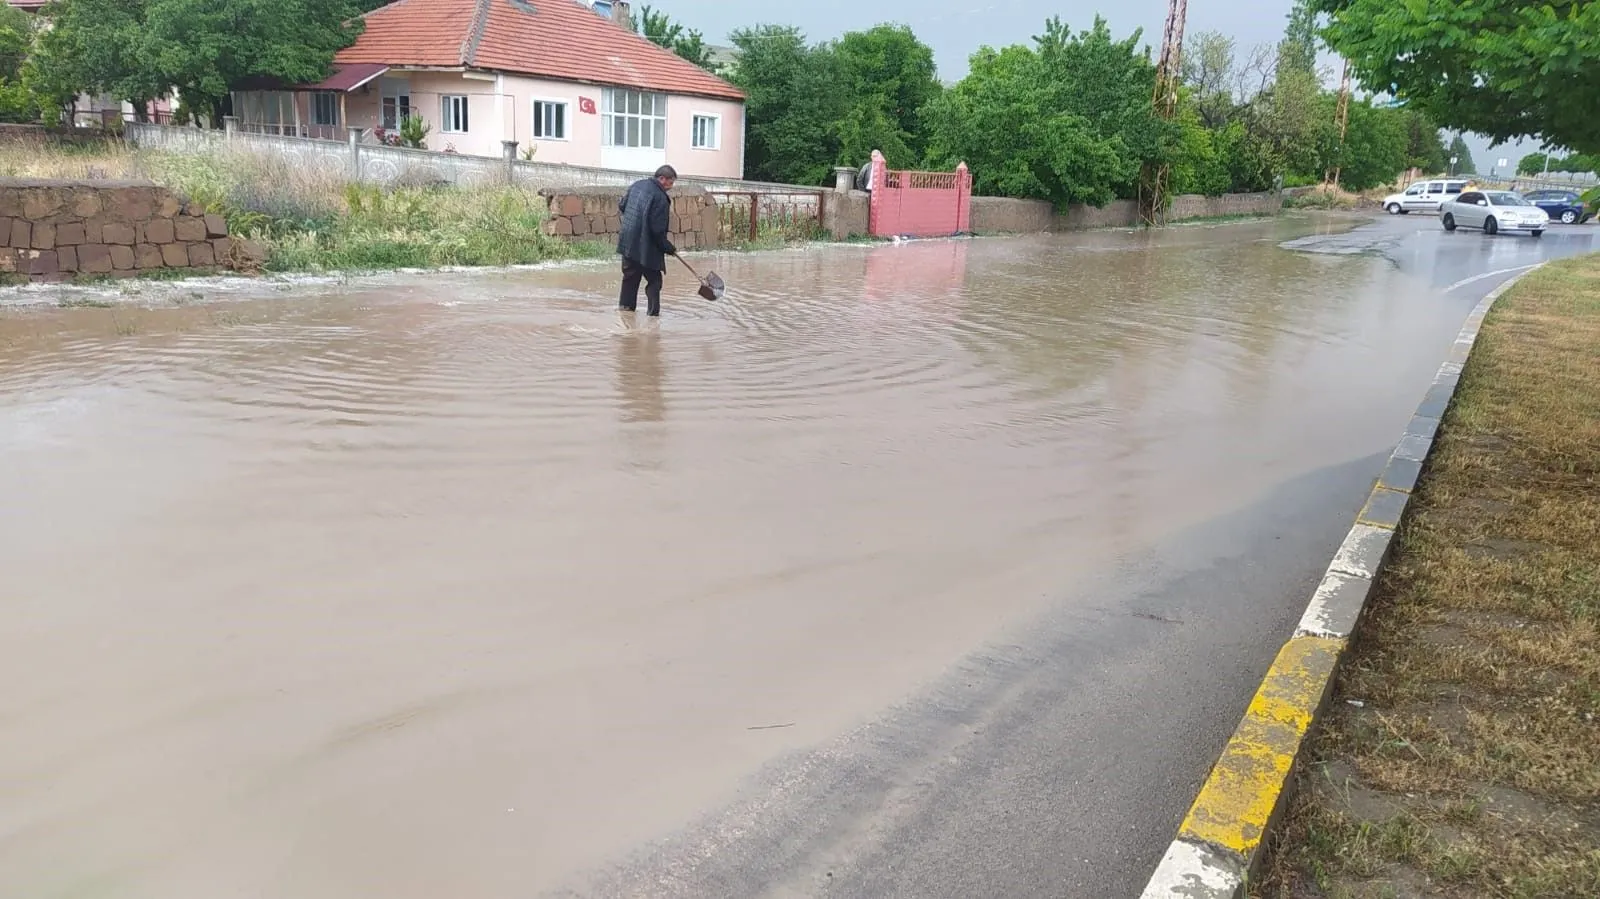 Sivas'ı sel vurdu: Tarım arazileri zarar gördü, iş yerlerini su bastı